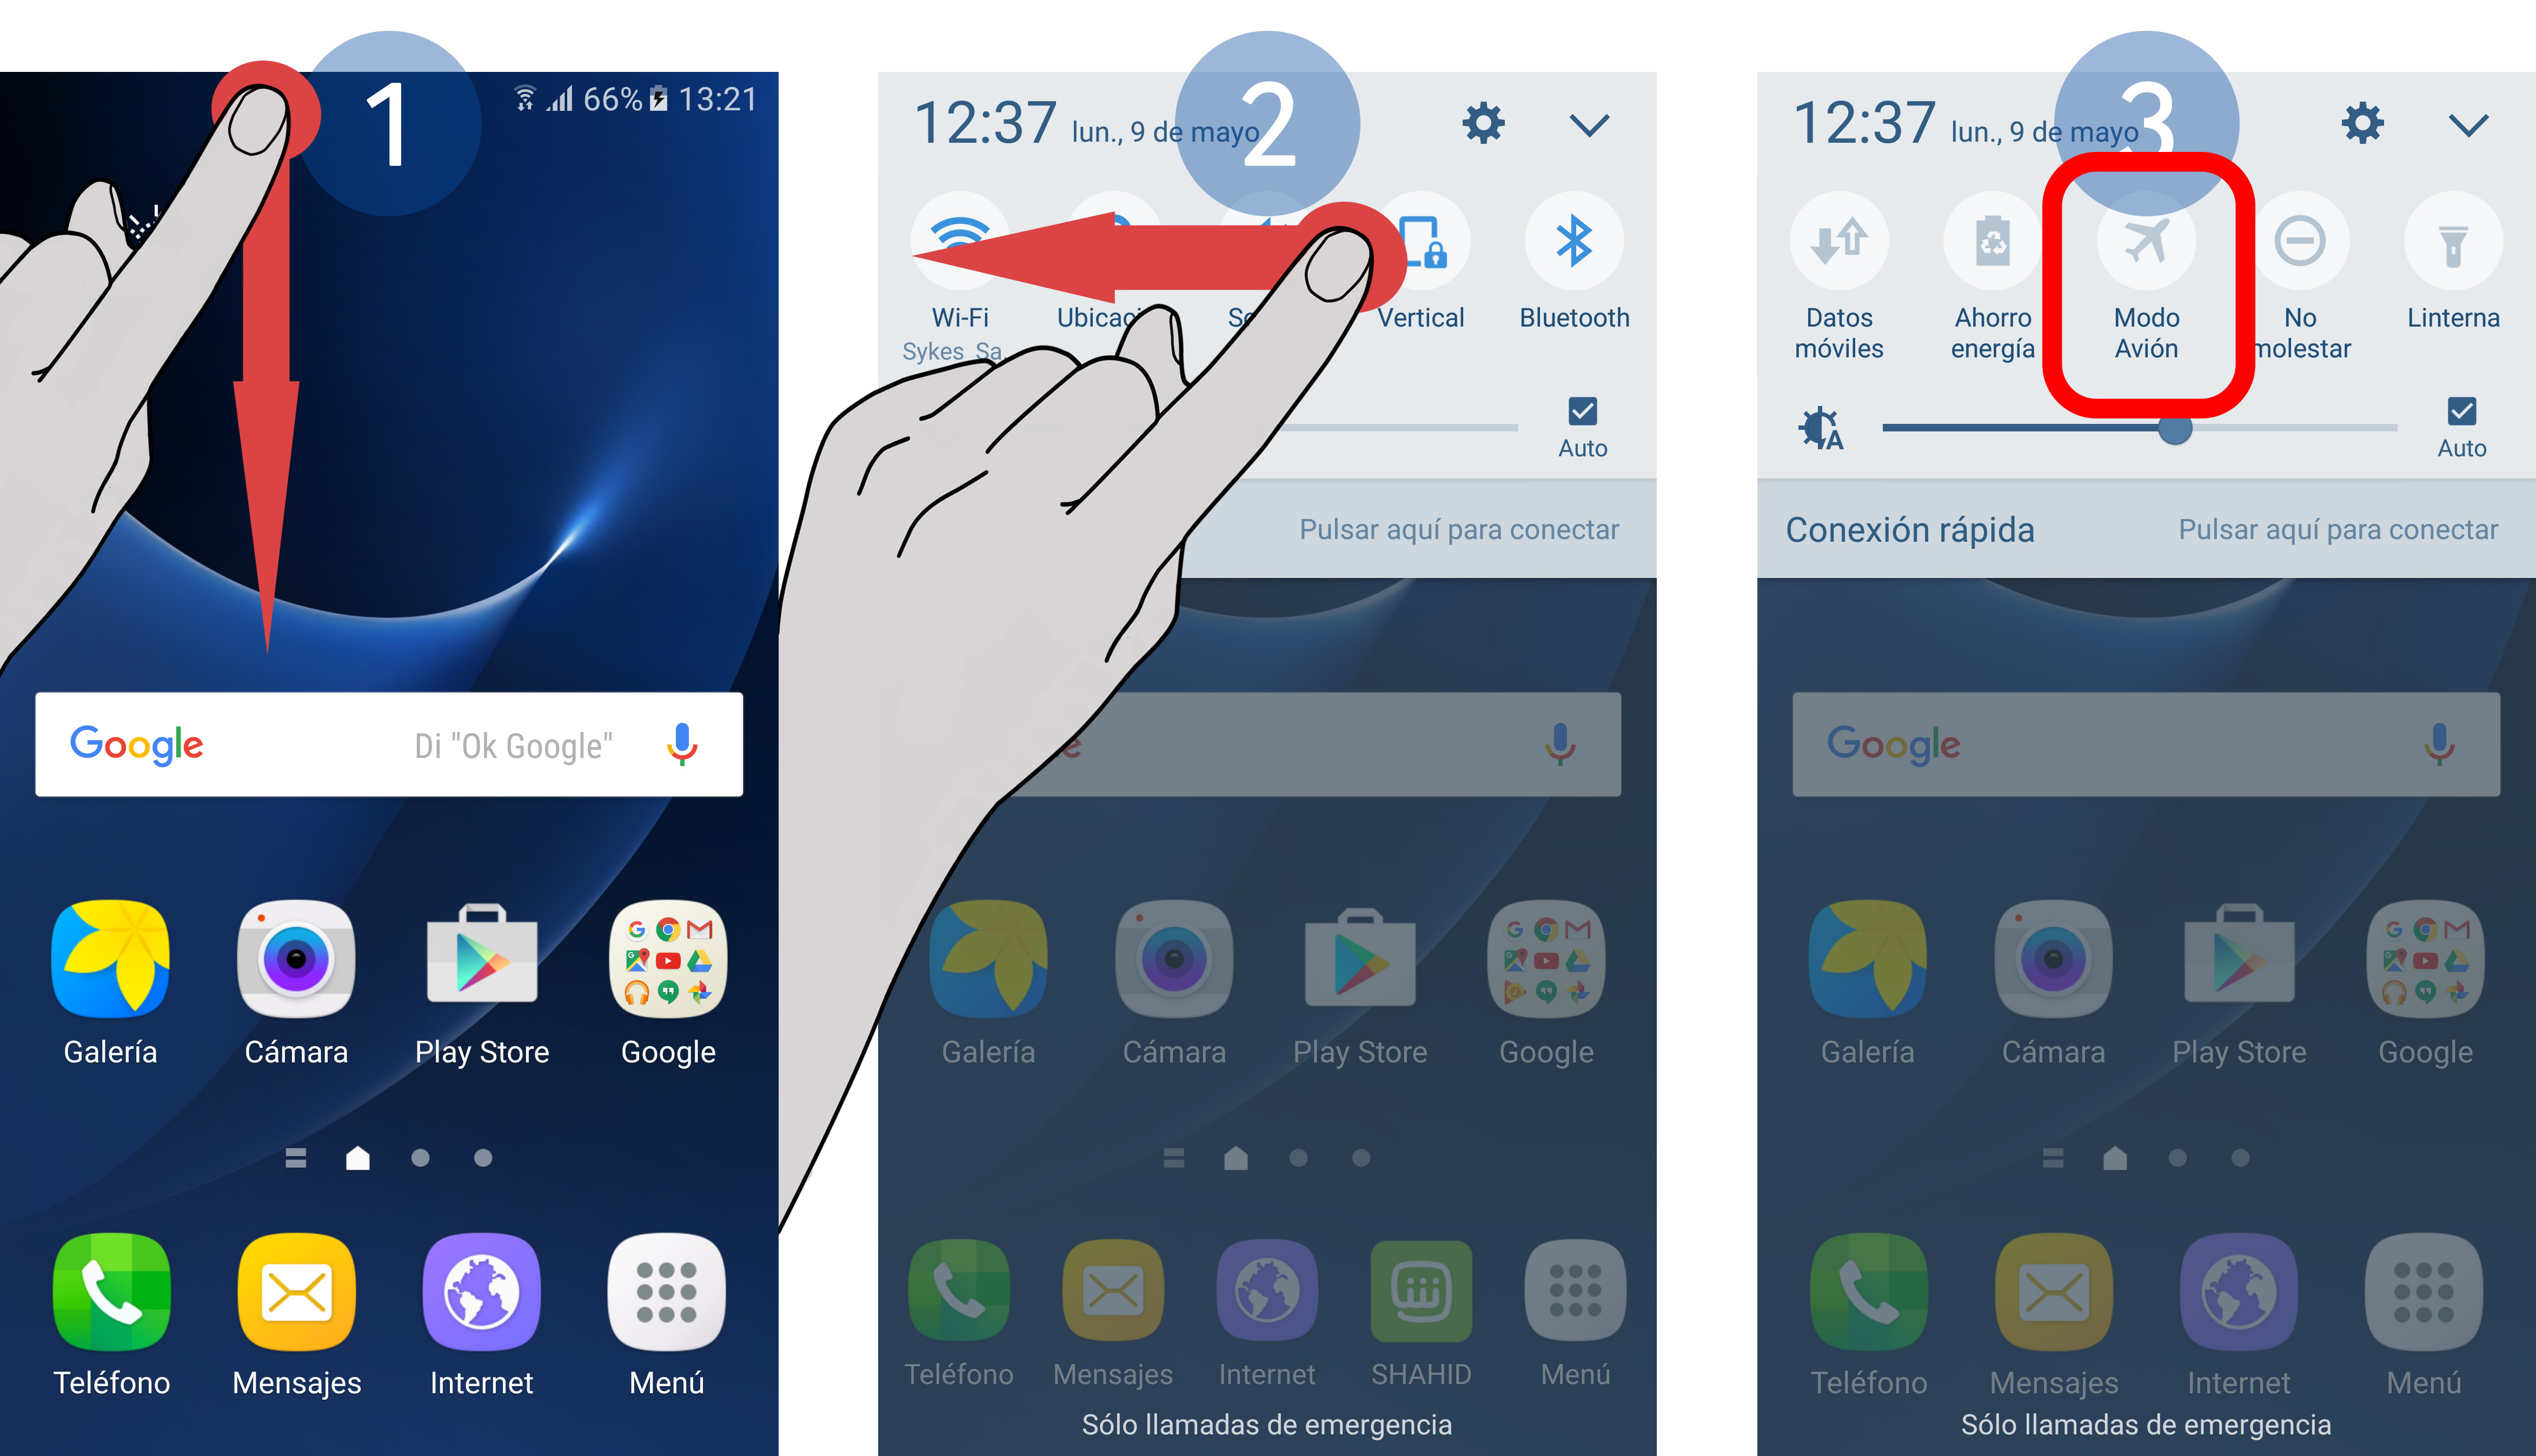 Cómo usar un celular?: Cómo activar el bluetooth y el modo avión del celular